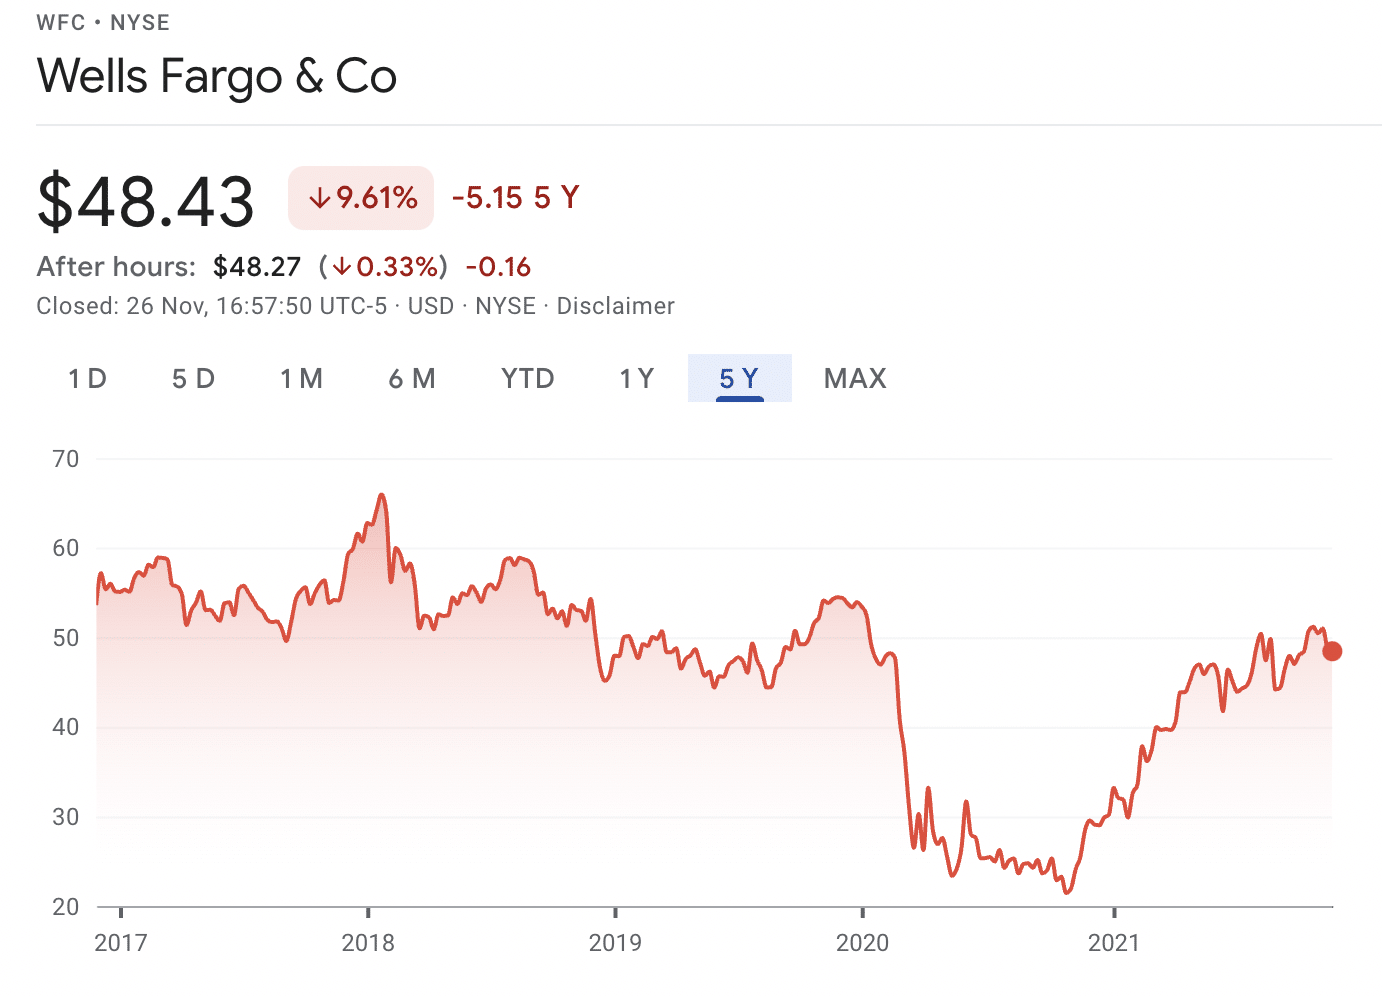 Wells Fargo & Co stock price today